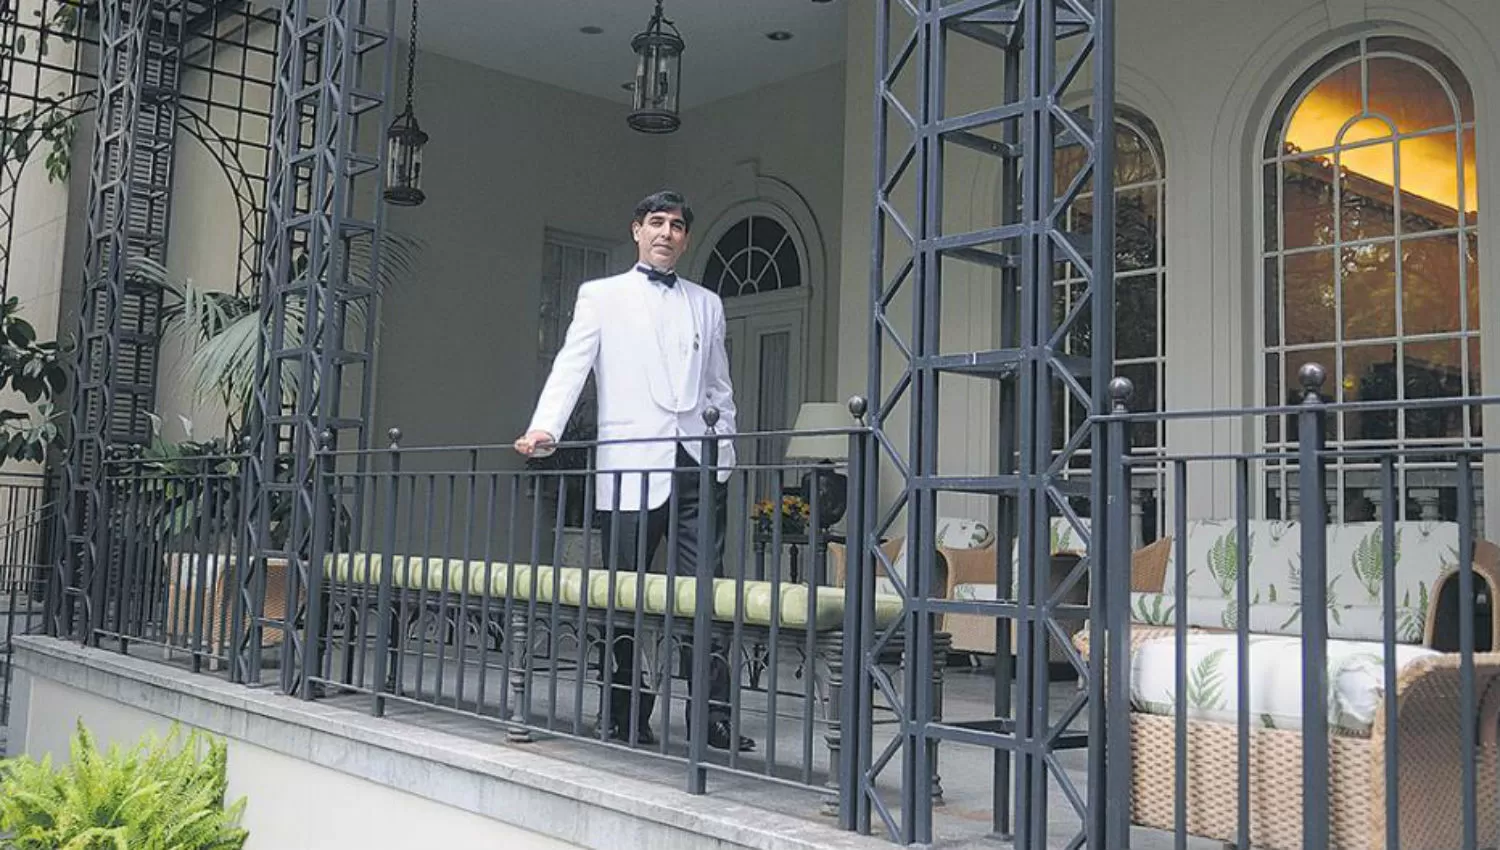 IMPECABLE. Samuel Victoria –esmoquin blanco, camisa blanca, corbata de moño negra– , en la embajada británica. FOTO DE PÁGINA 12/ Guadalupe Lombardo